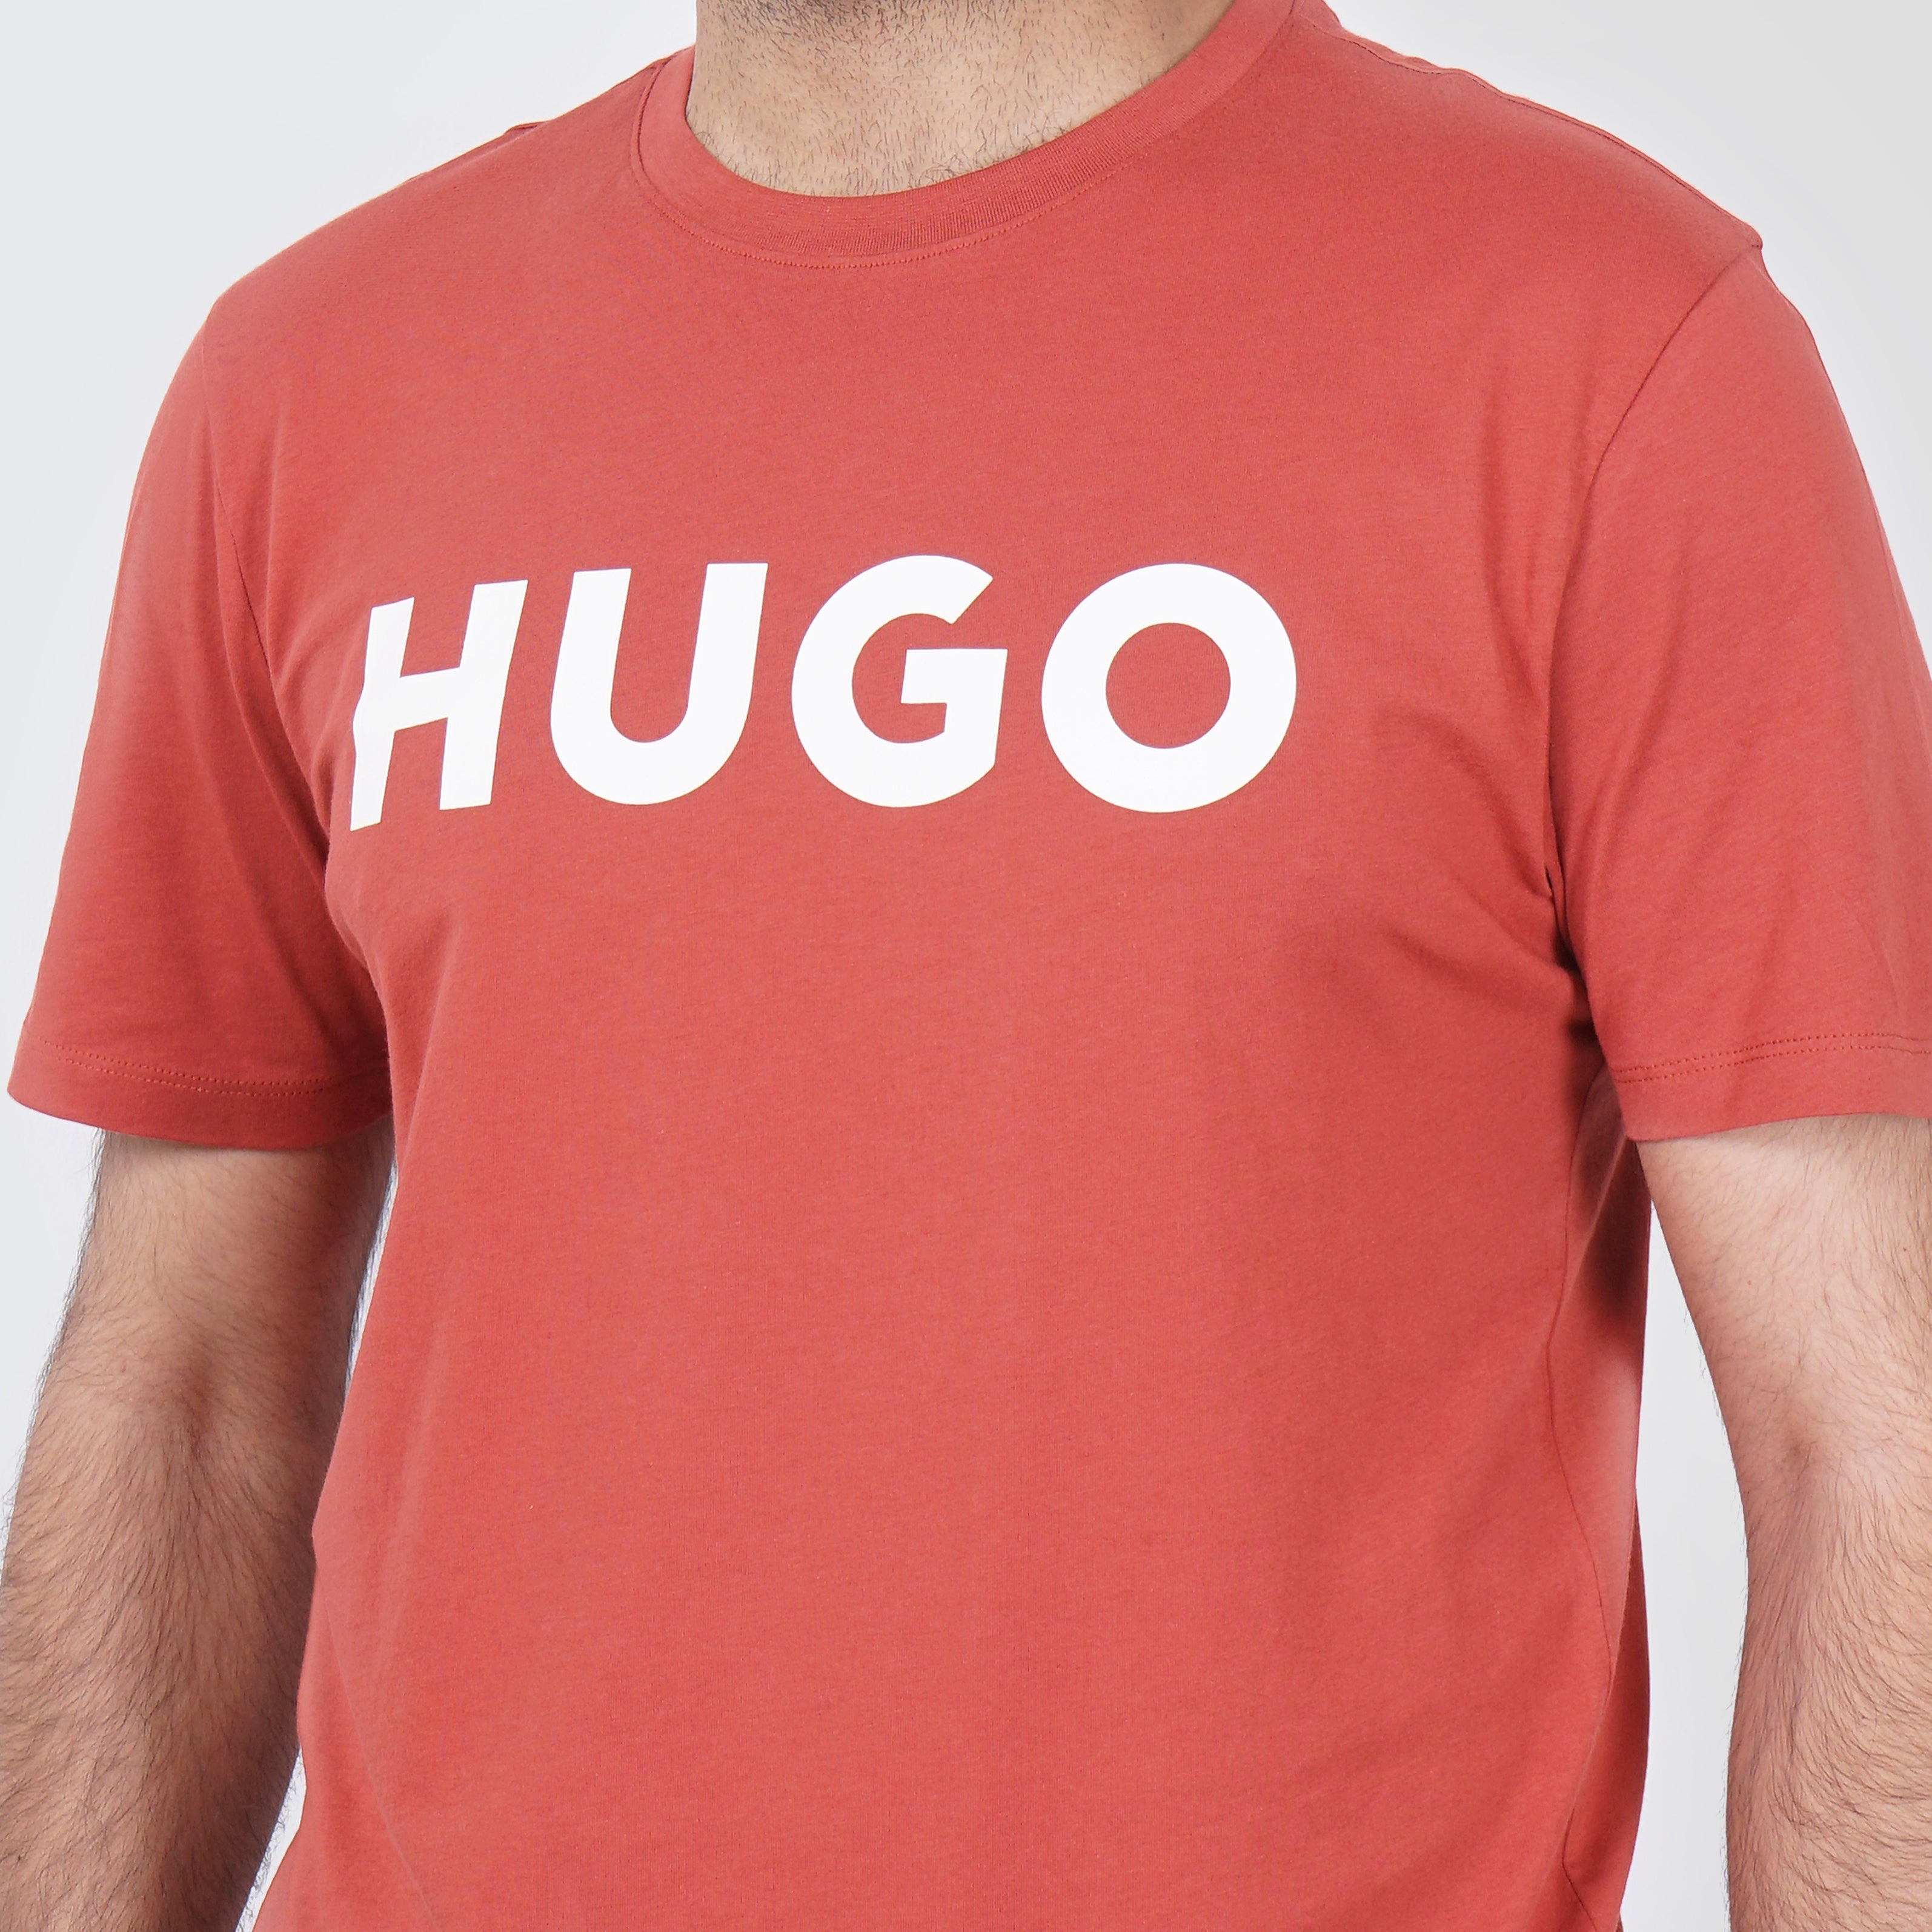 Original HUGO BOSS Orange T-Shirt - Marca Deals - Hugo Boss